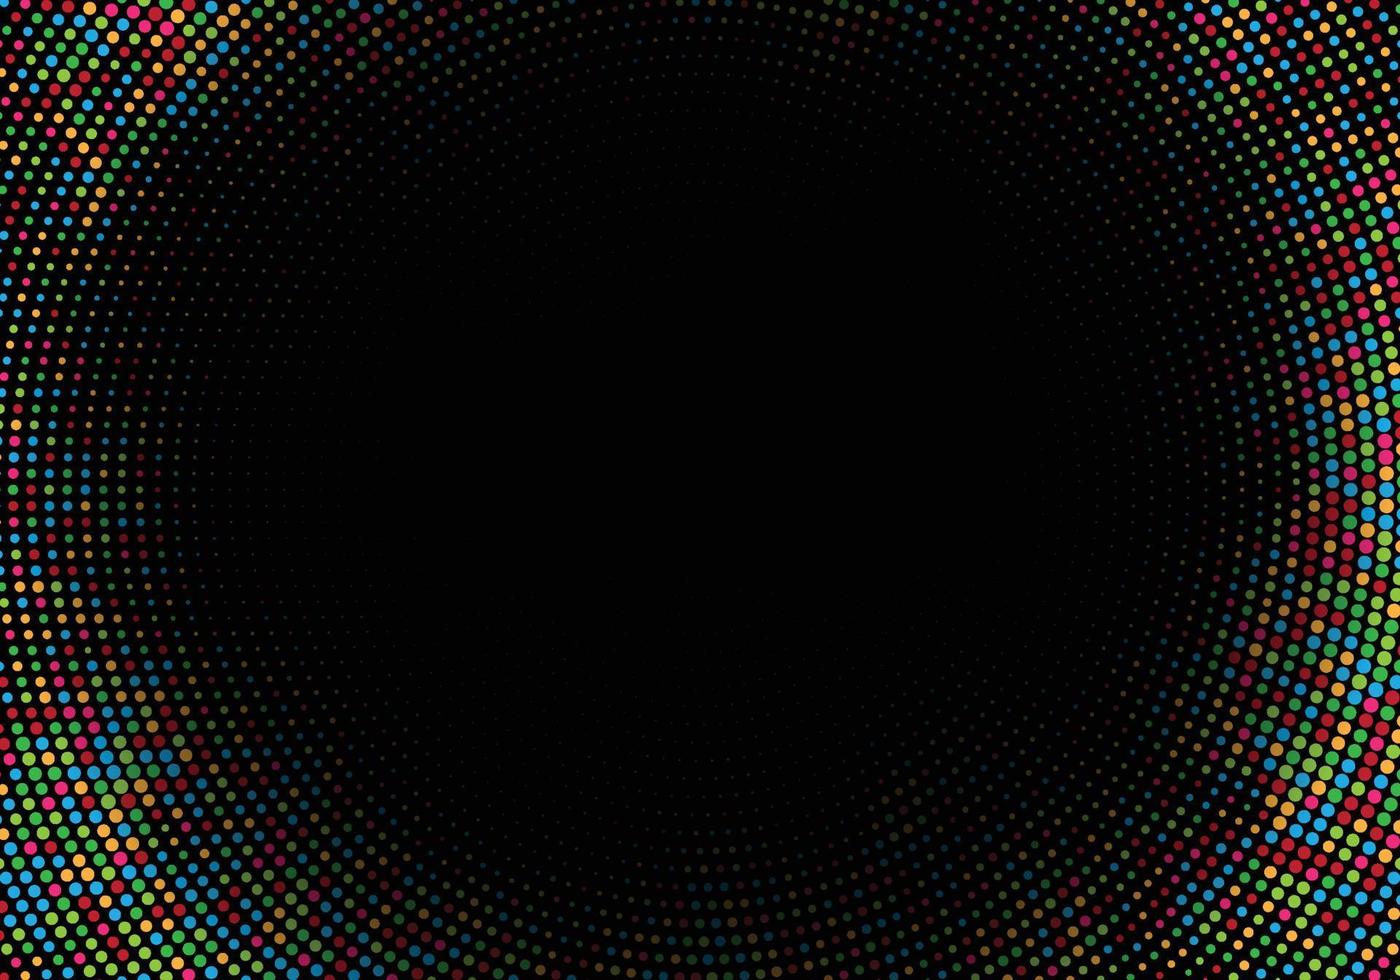 abstrakt färgglada cirkulär halvton på svart bakgrund vektor